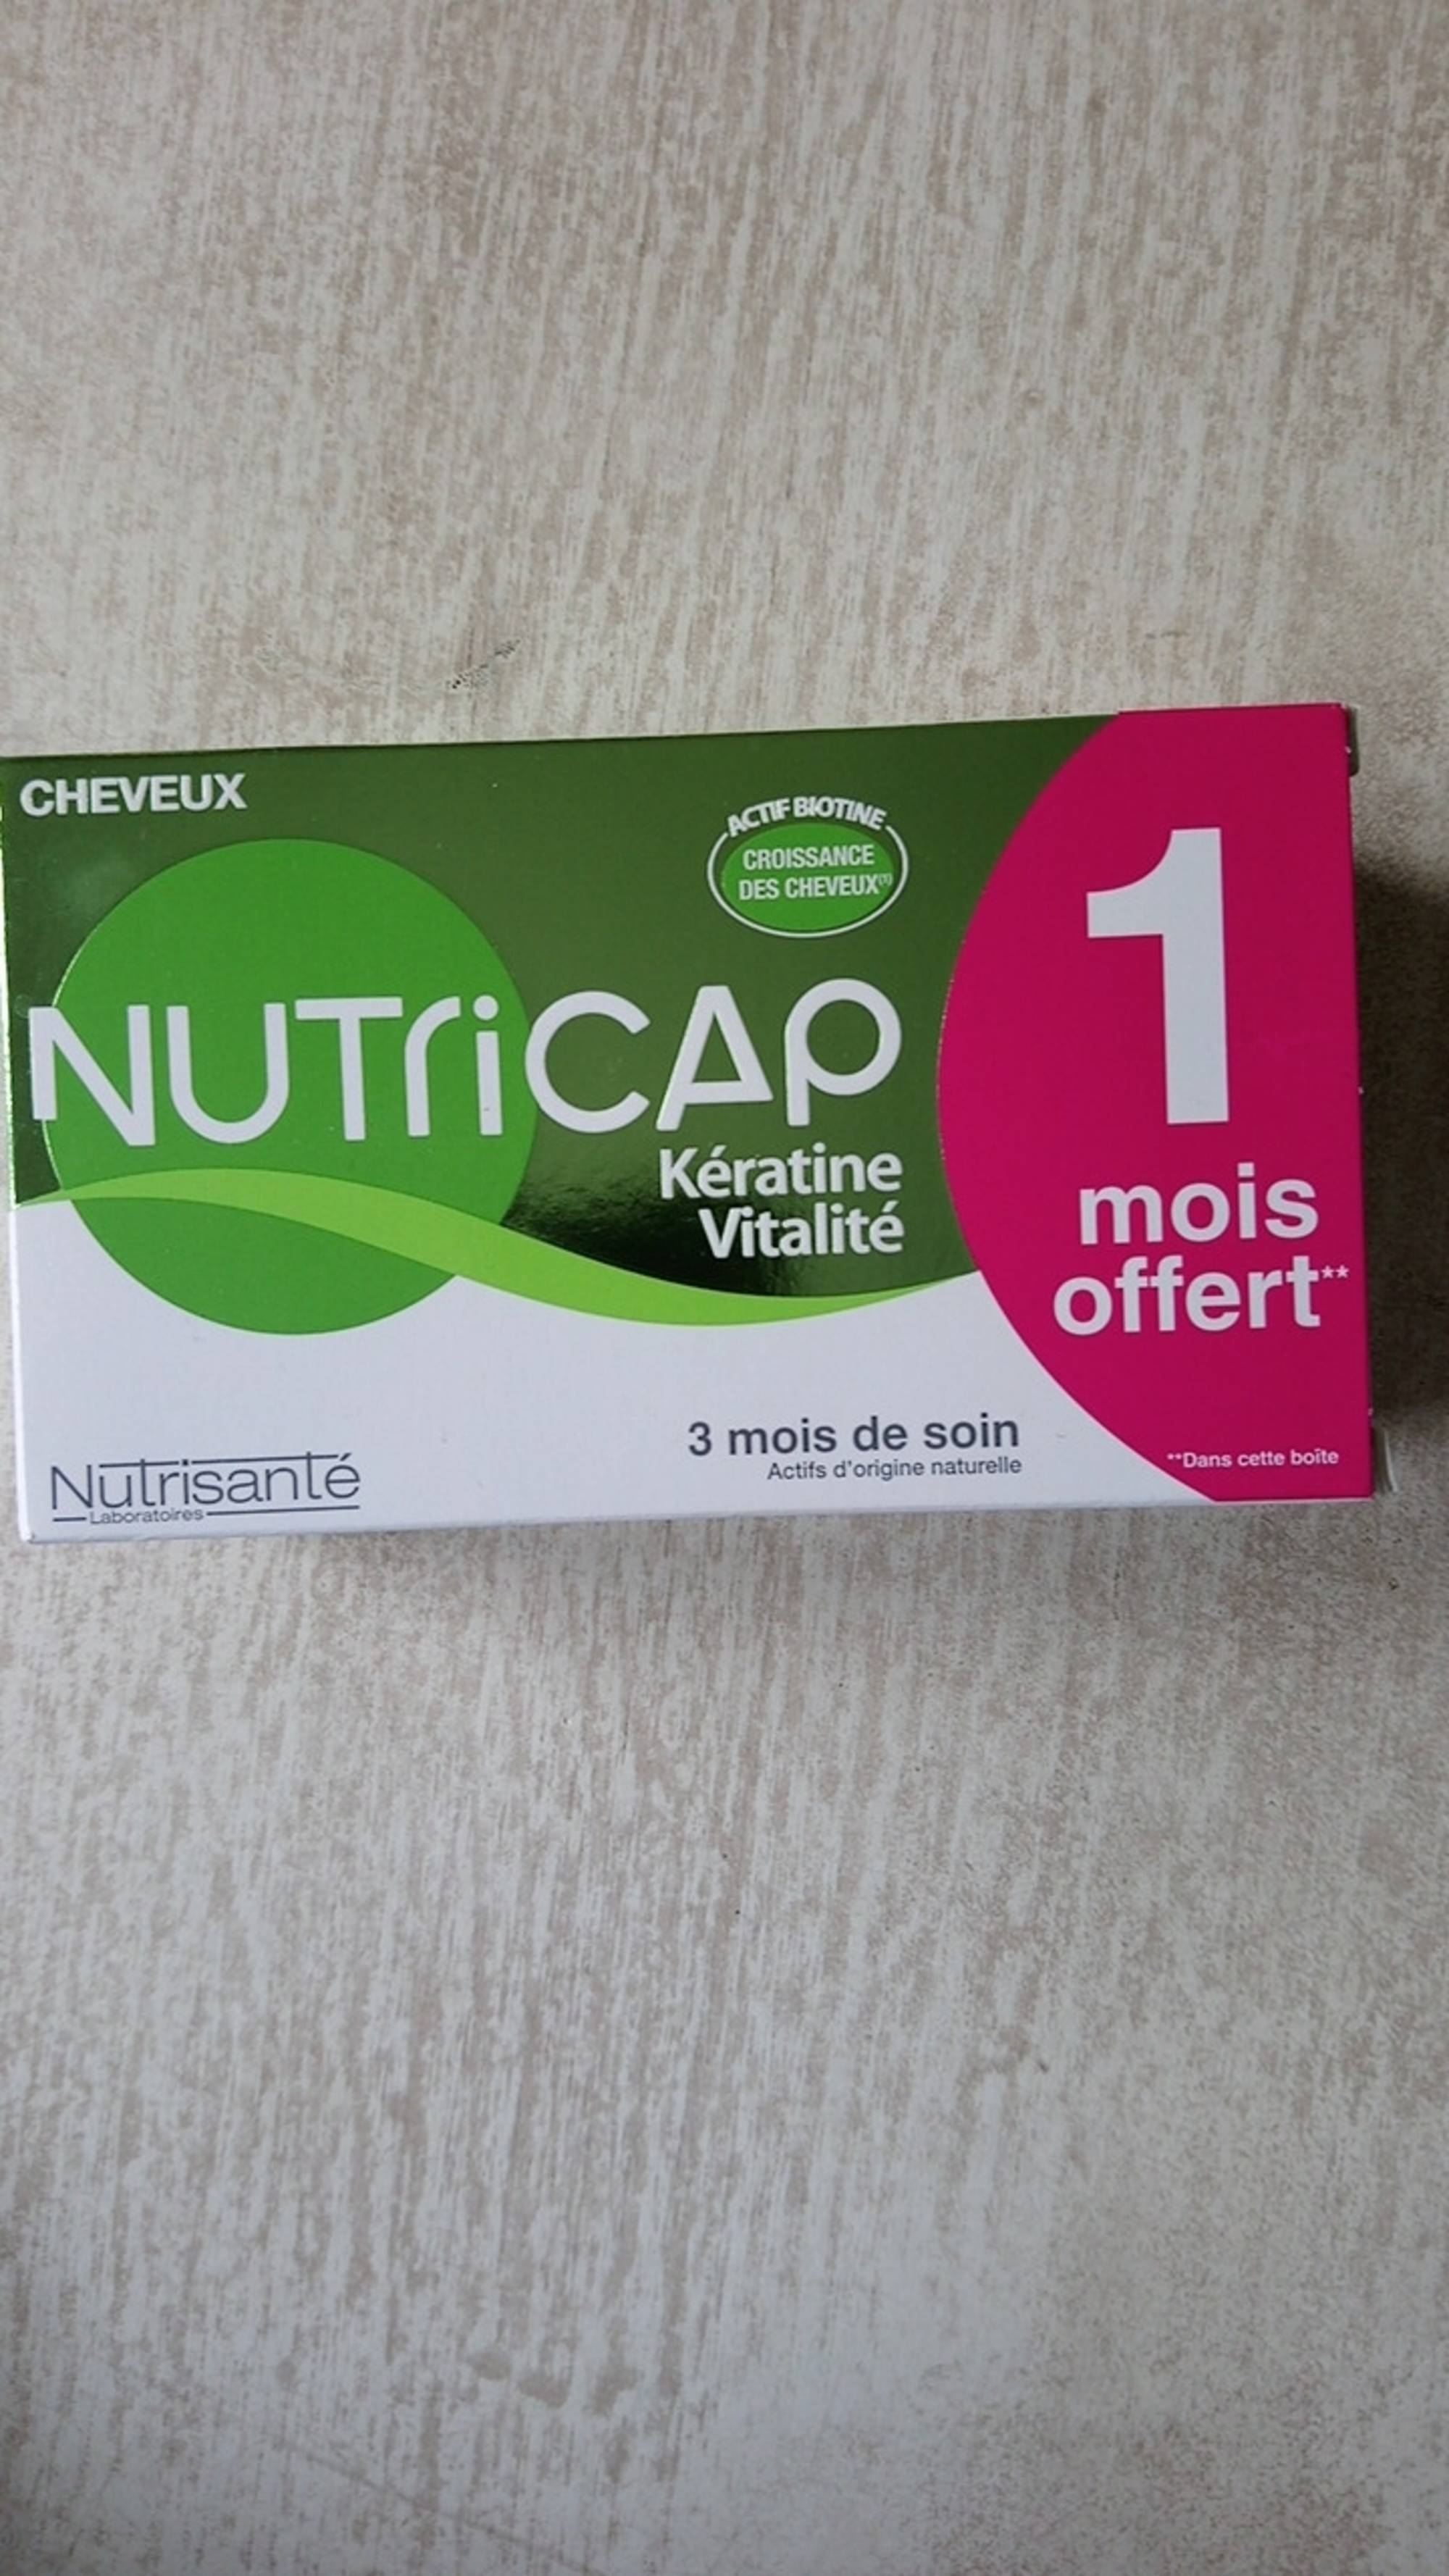 NUTRISANTÉ - Nutricap Kératine vitalité - Croissance des cheveux